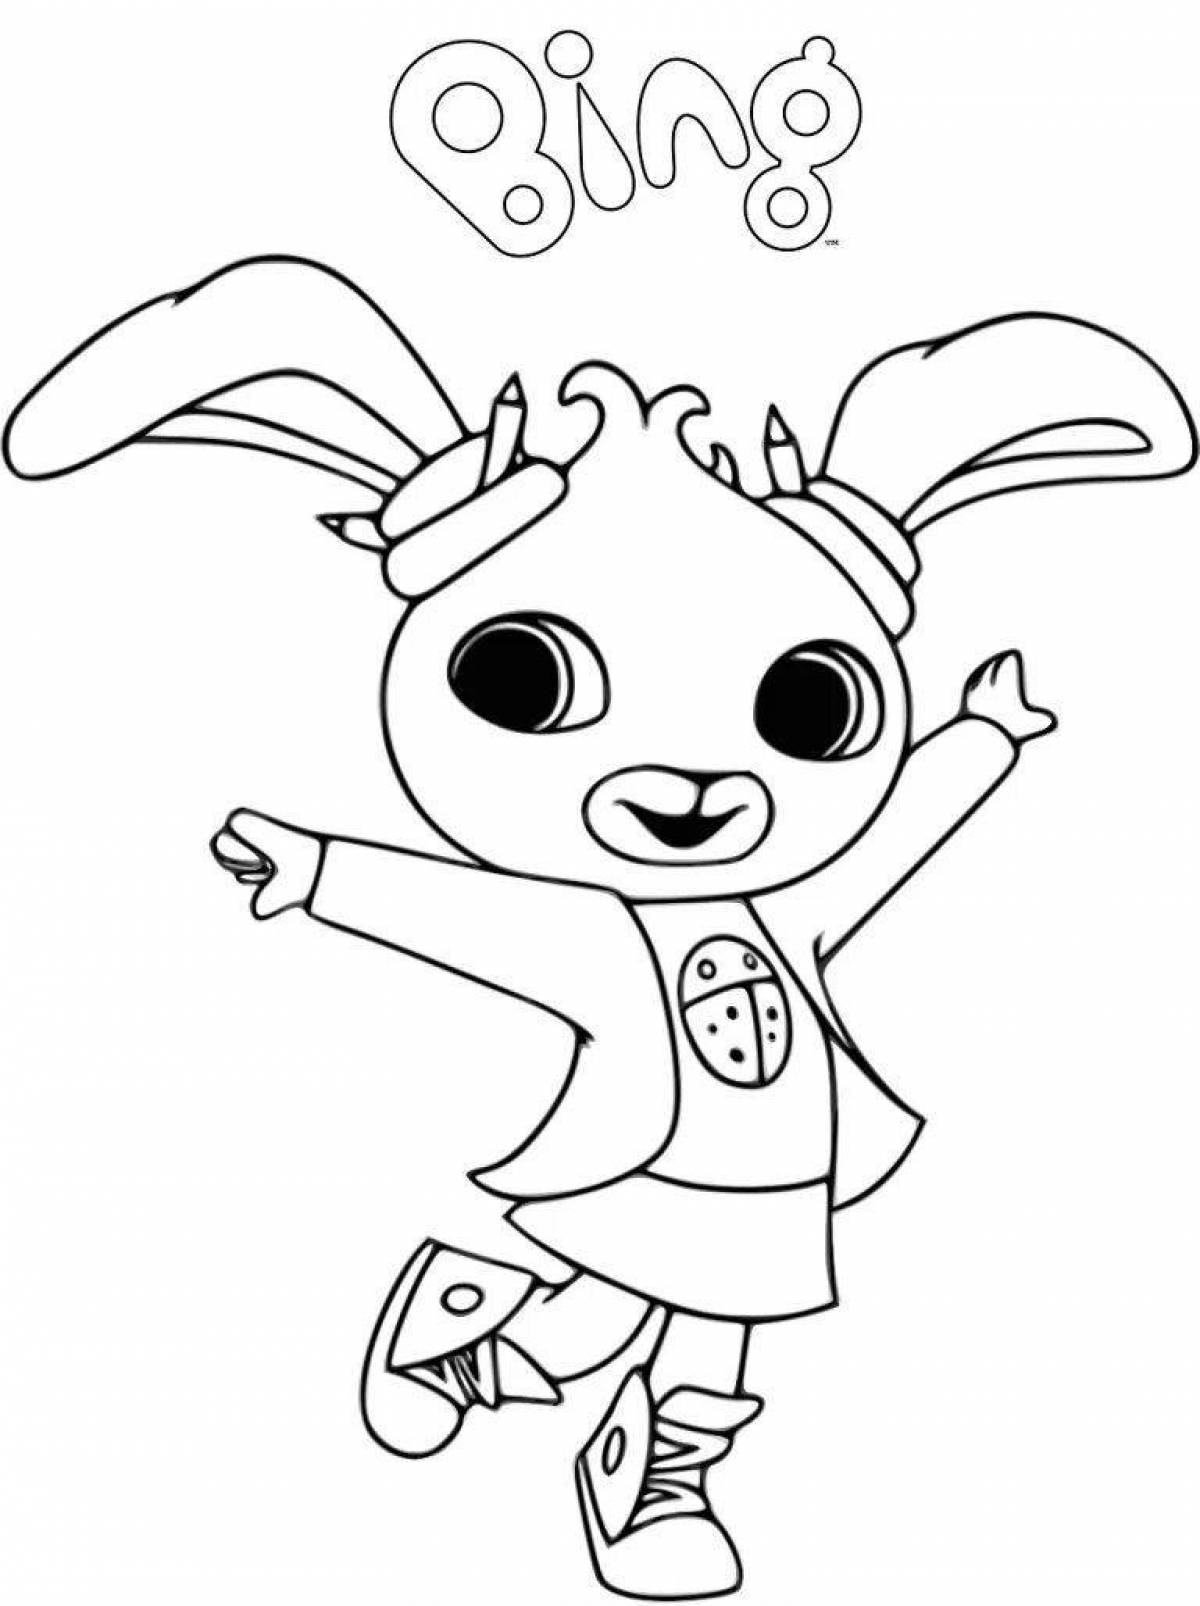 Binga Bunny's playful coloring page